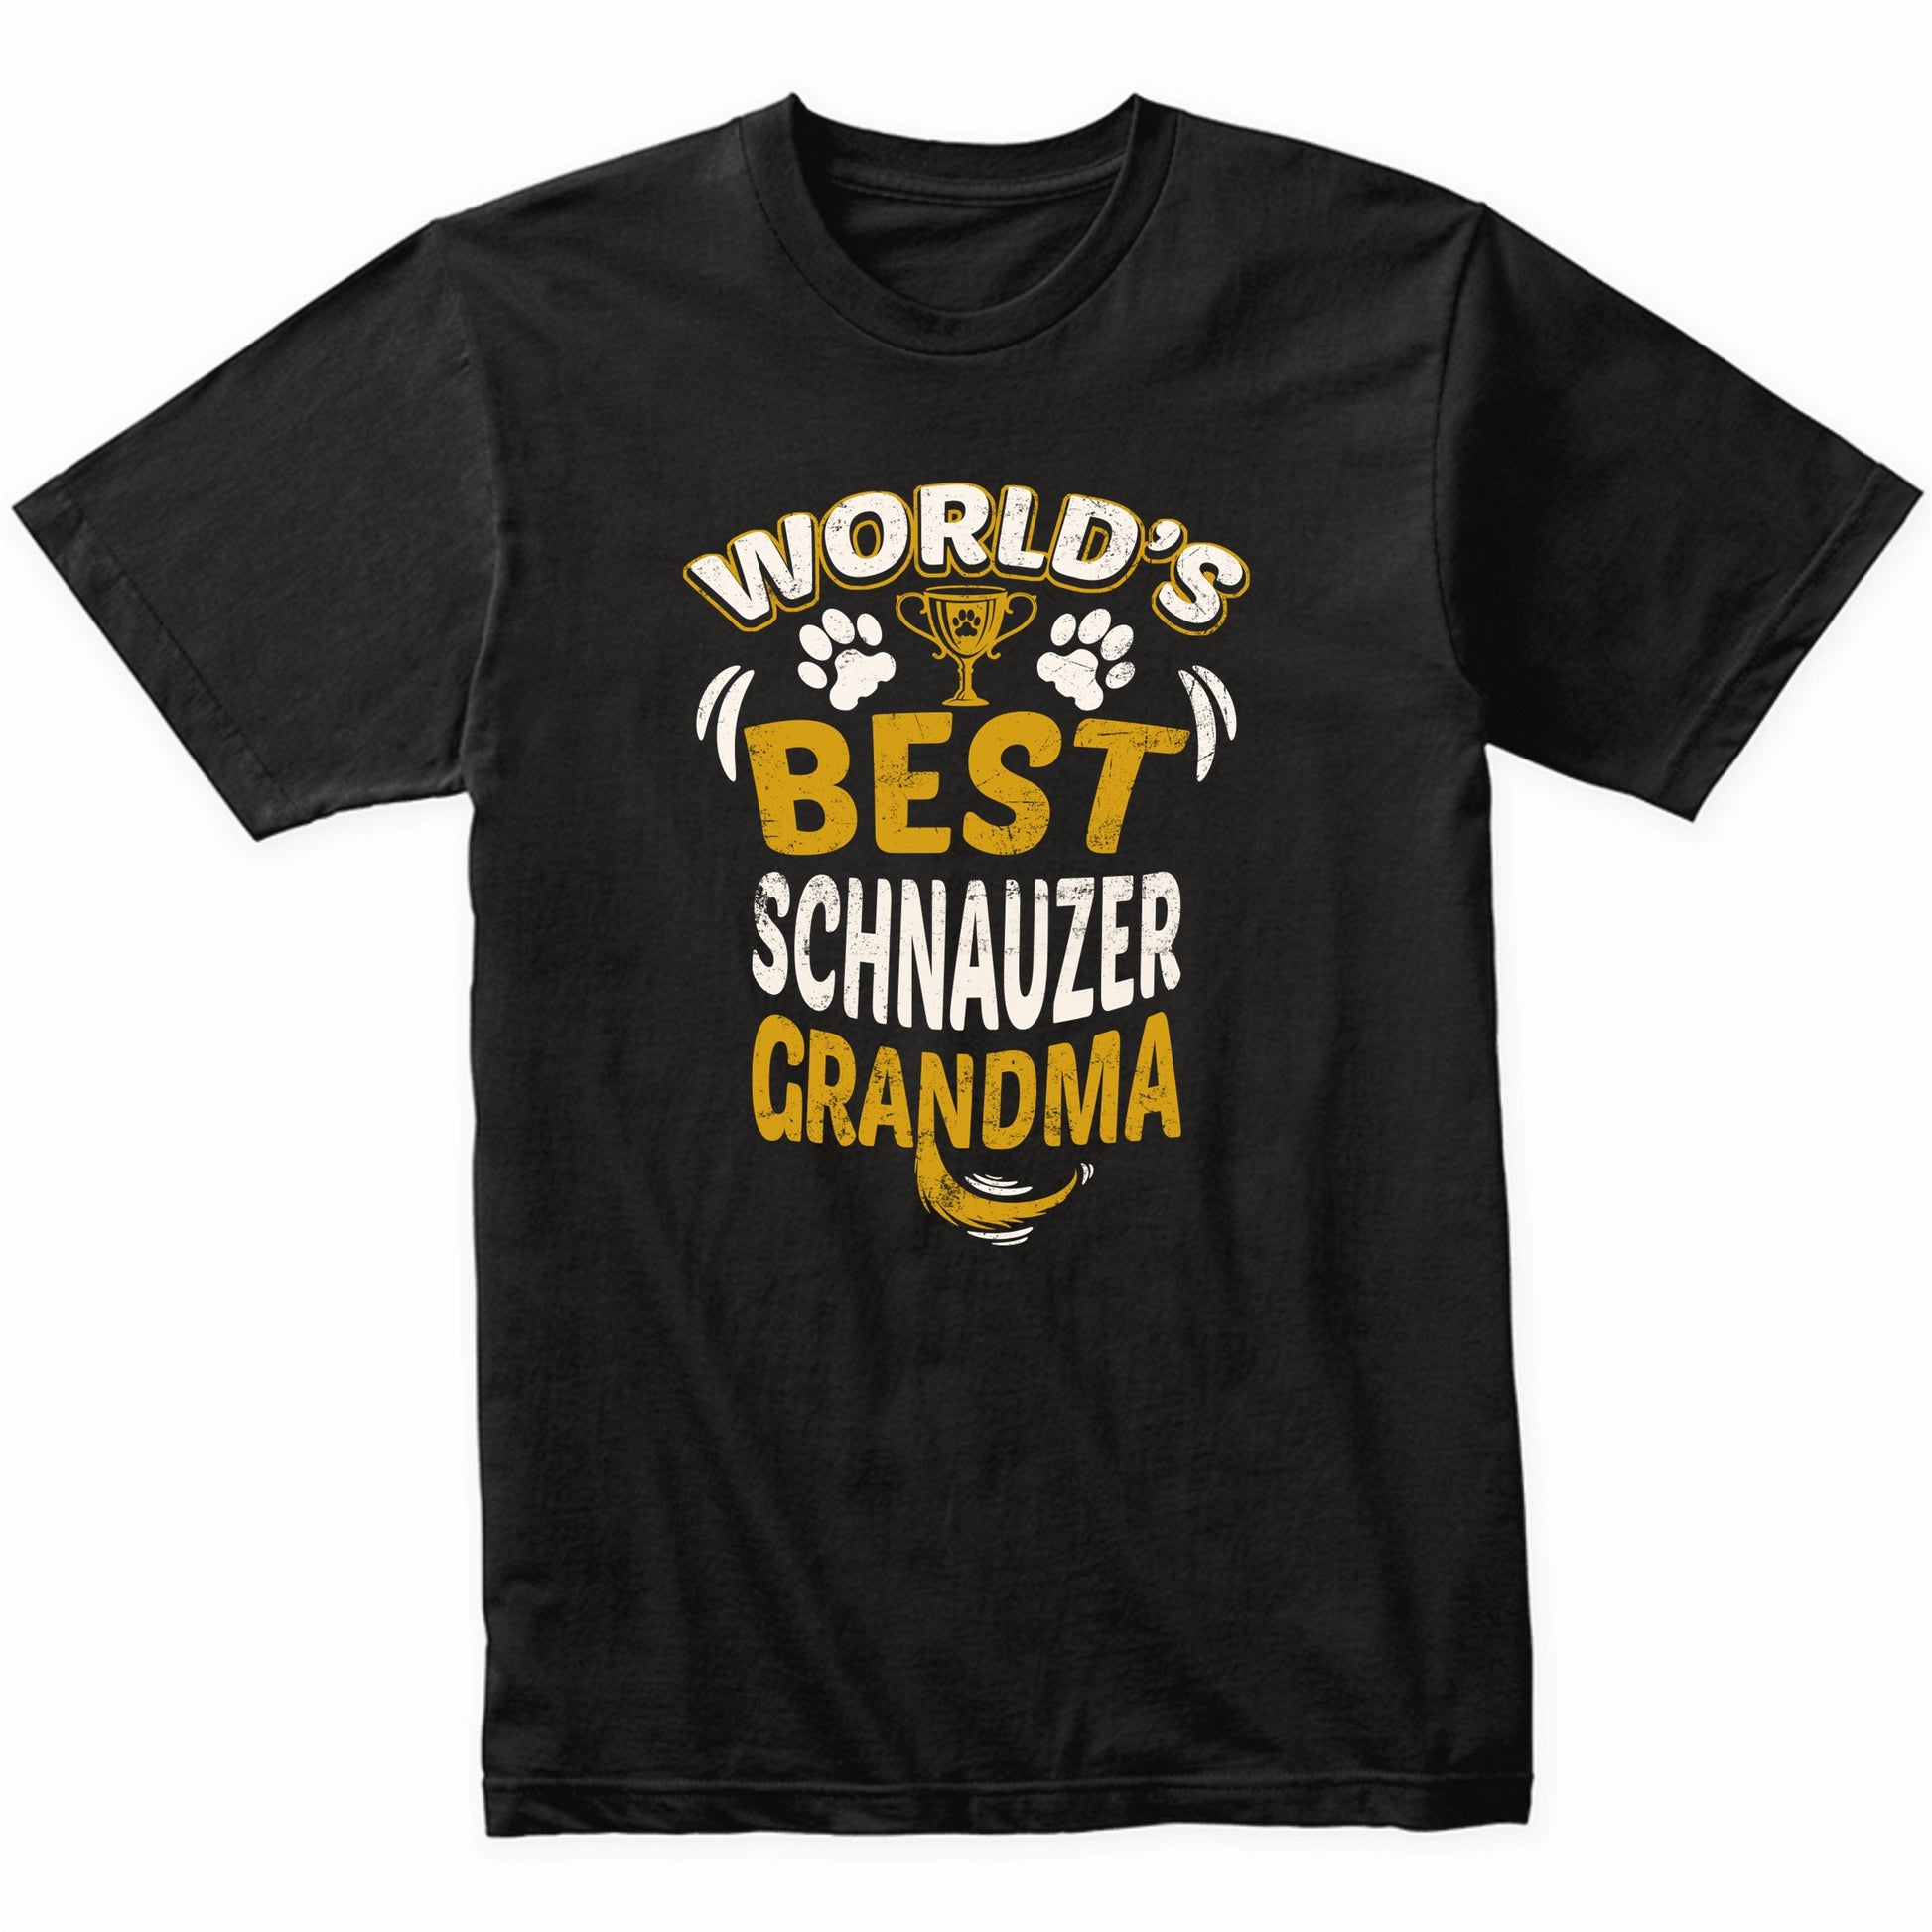 World's Best Schnauzer Grandma Graphic T-Shirt